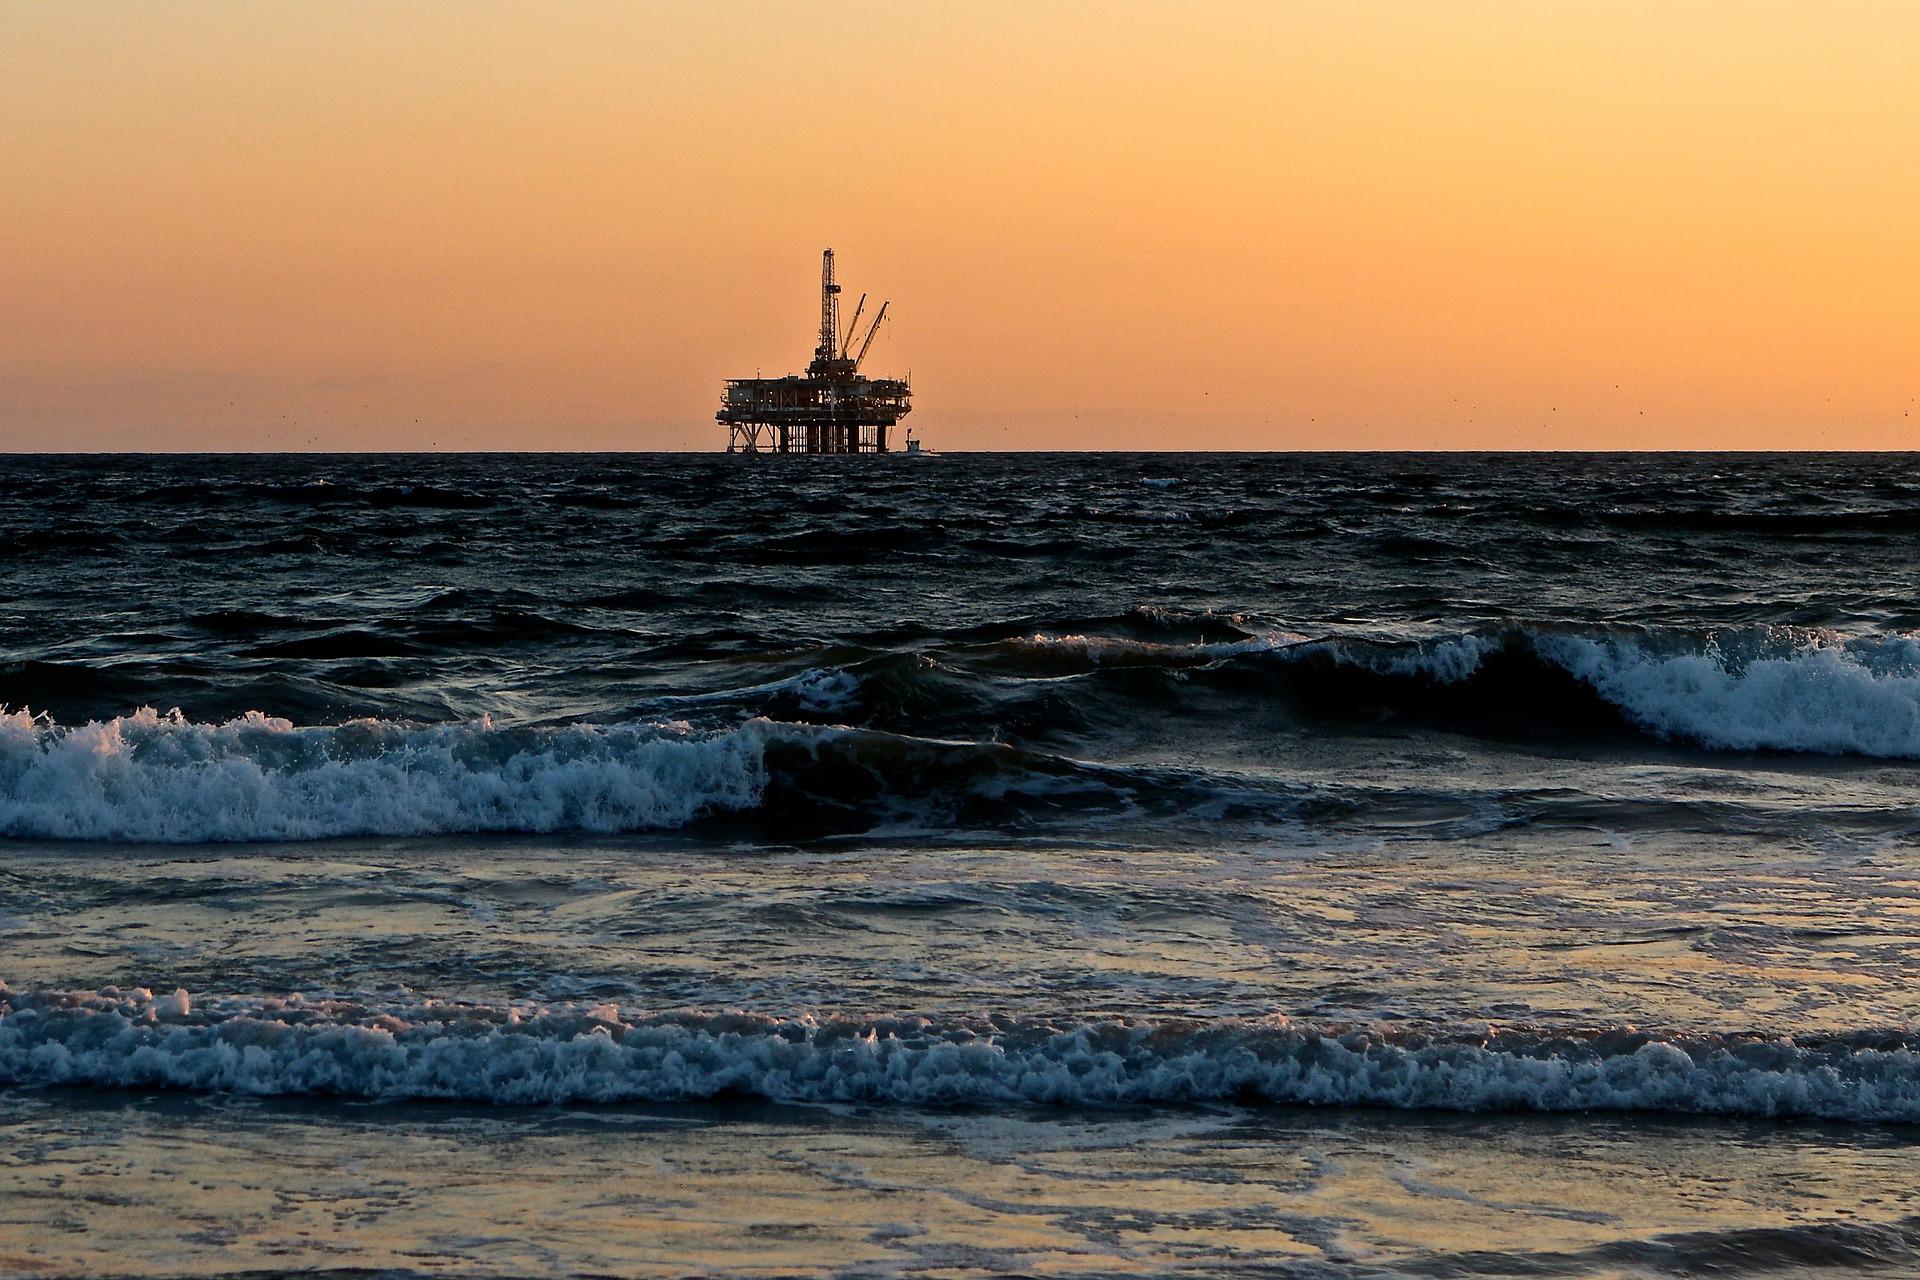 Multinacional Apache Corporation tem 50 vagas de emprego offshore para trabalhar nos EUA, Egito e Reino Unido com setor de óleo e gás. Empresa auxilia com visto e processo de mudança para outro país! - Canva